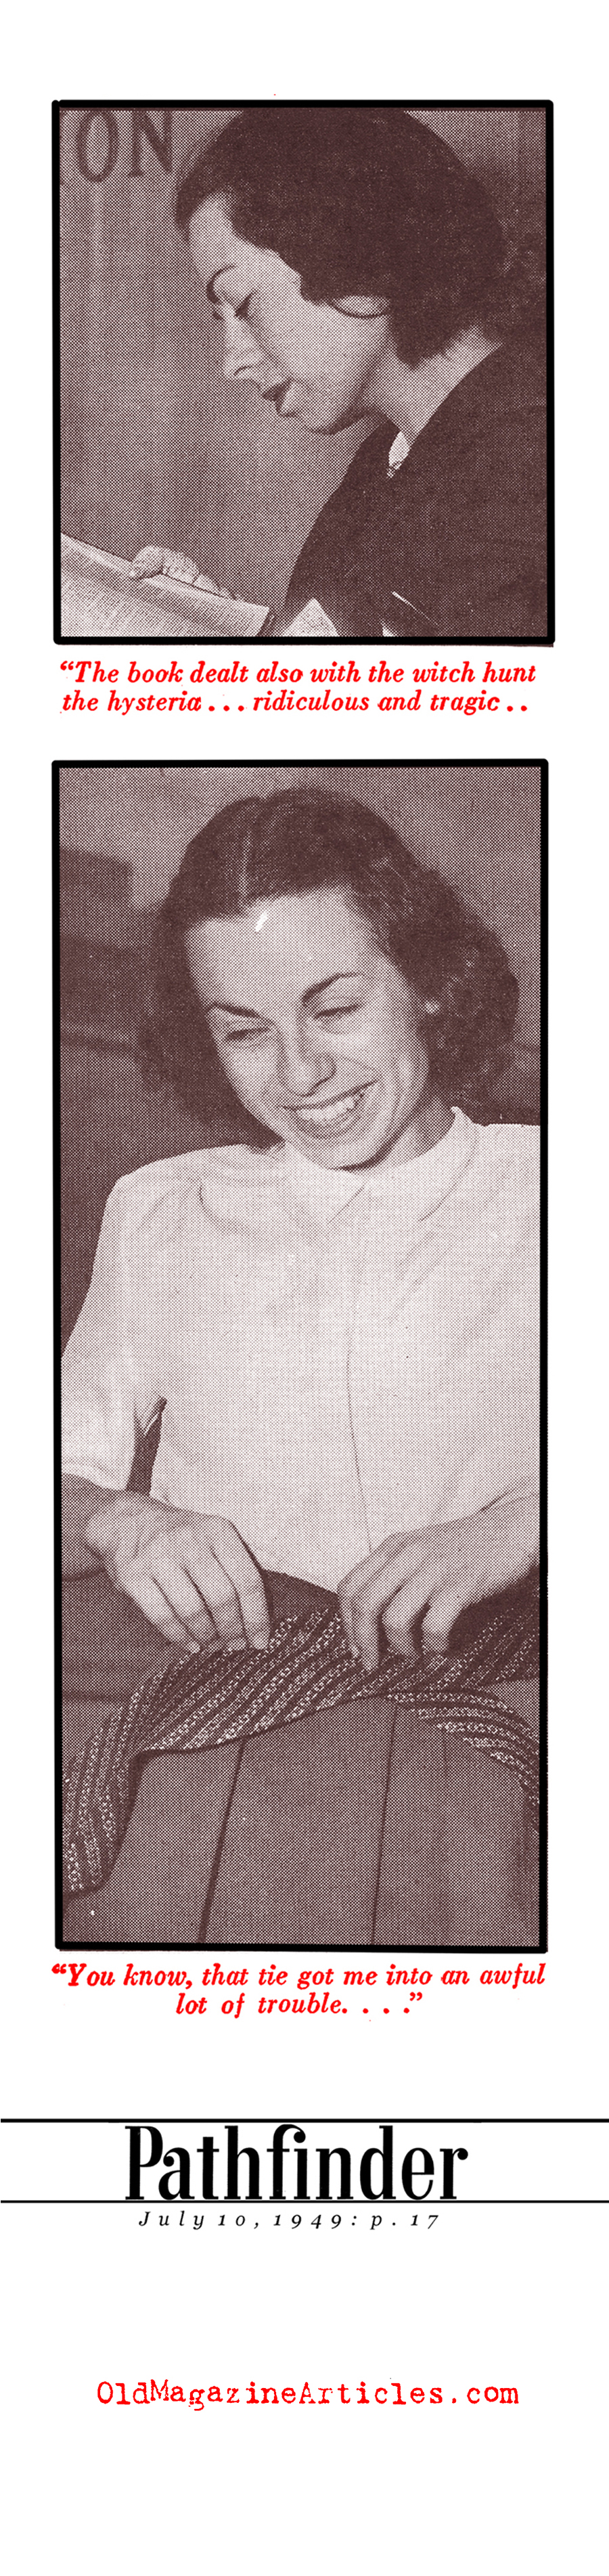 Judith Coplon in Federal Court (Pathfinder Magazine, 1949)